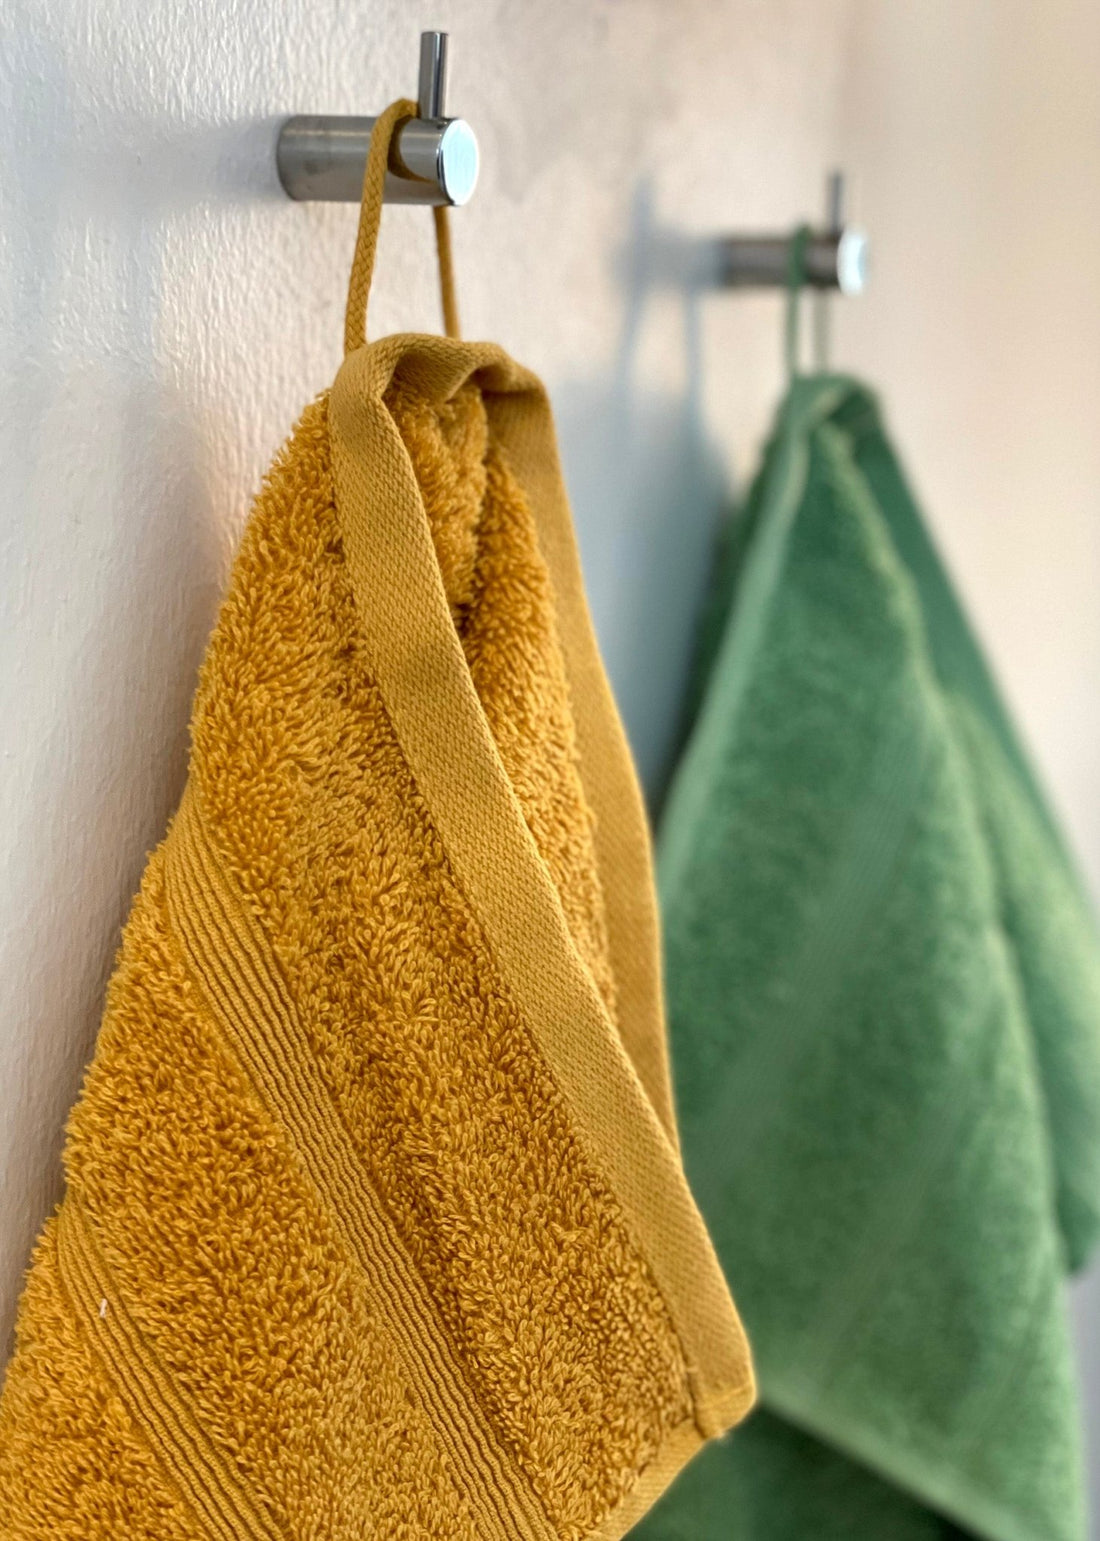 To håndklæder i farven karrygul og græsgrøn hænger på en knage inde på badeværelset.